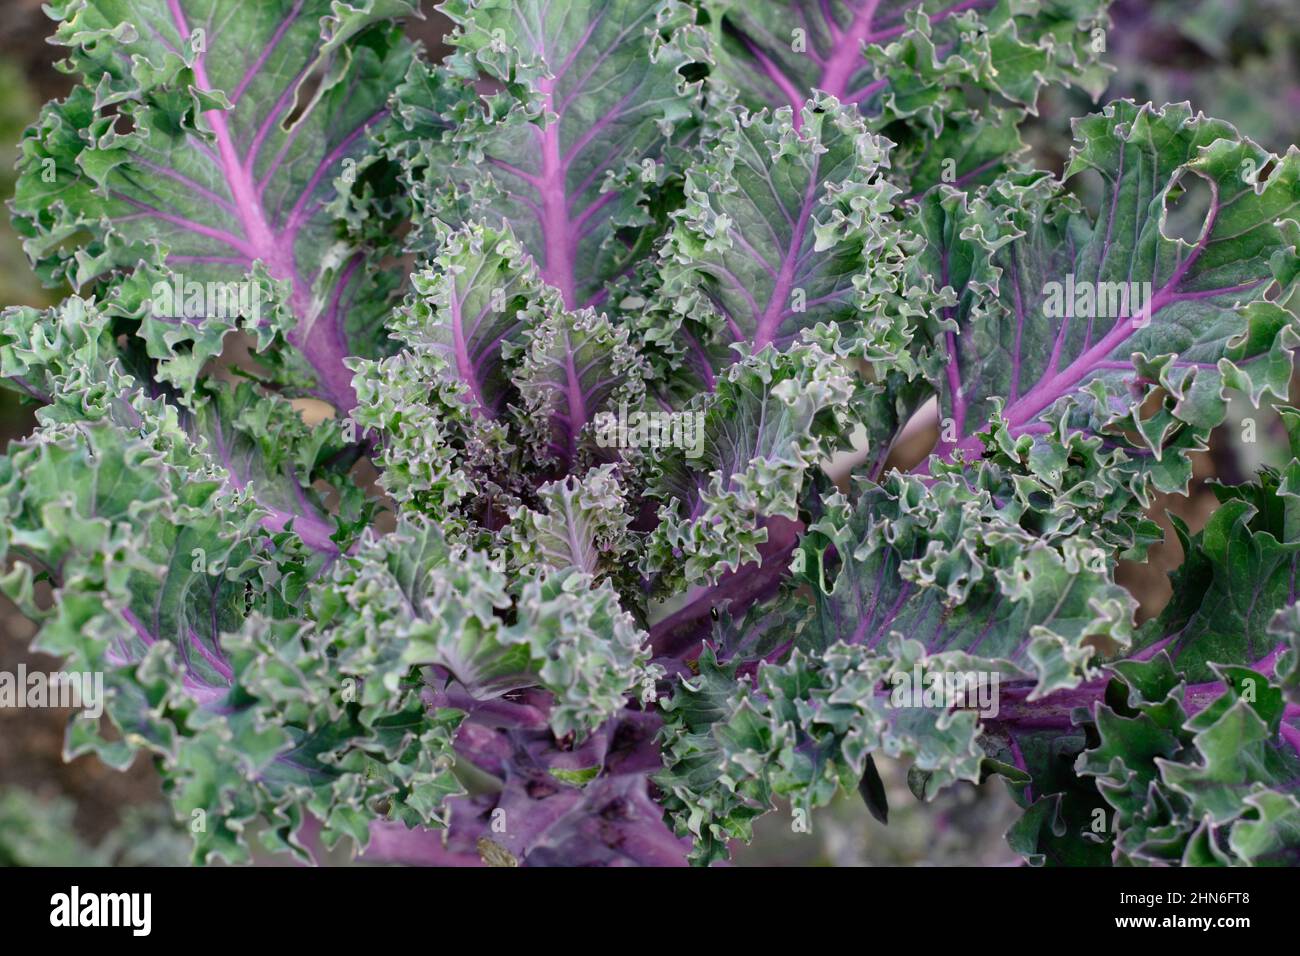 Brassica oleracea 'Midnight Sun' Kale foglie ornamentali di kale con vene viola. REGNO UNITO. Foto Stock